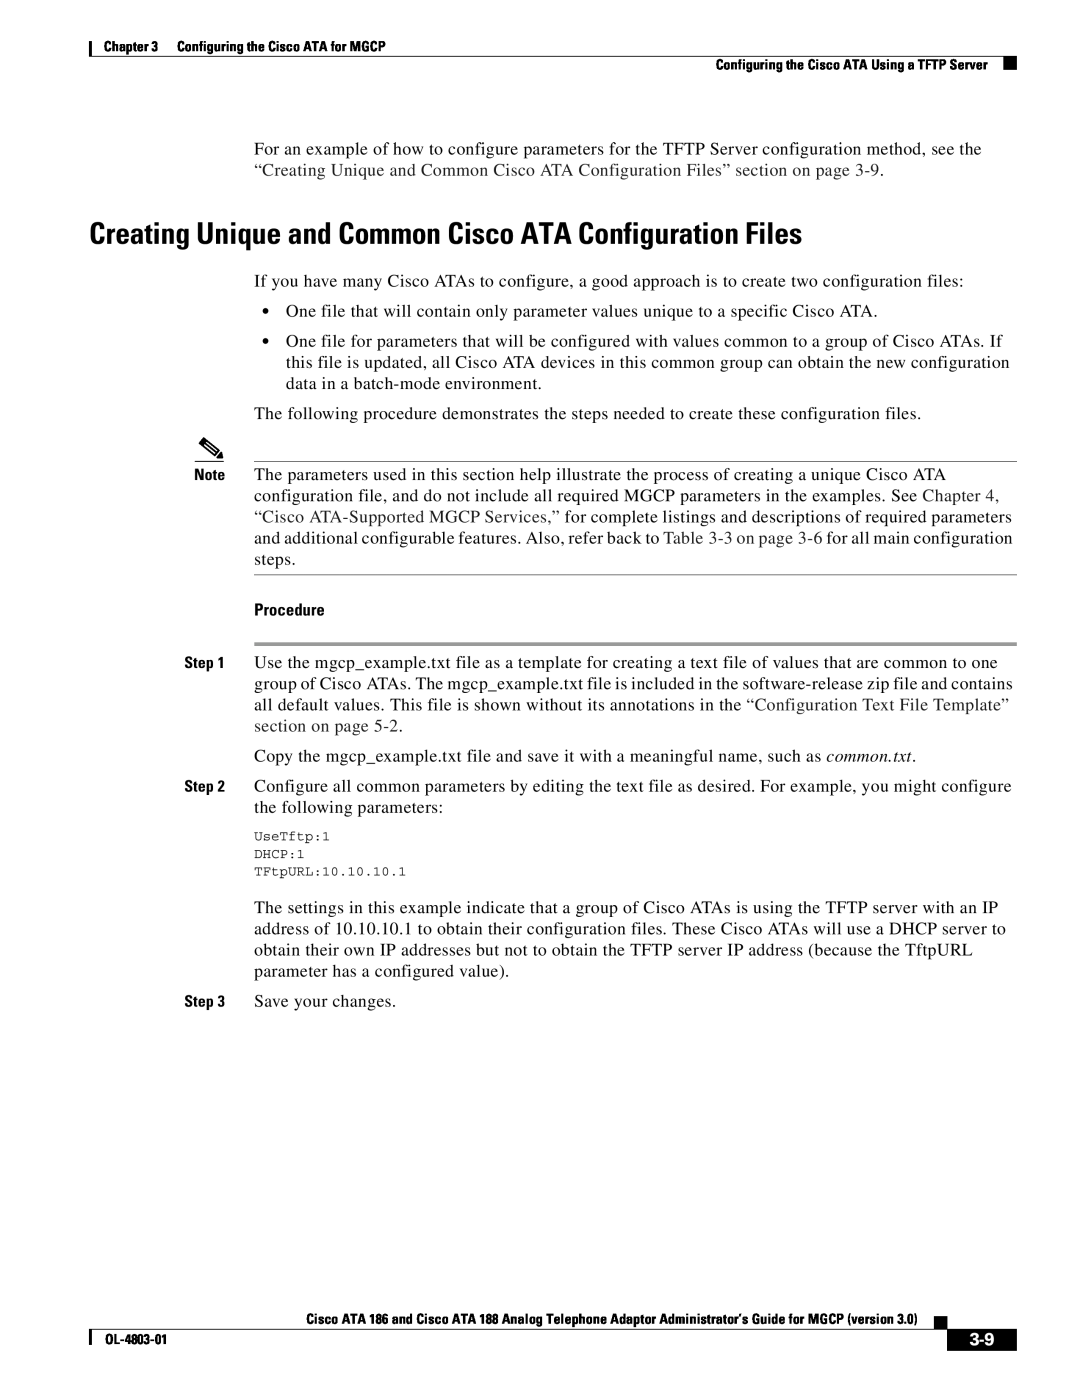 Cisco Systems ATA 186 manual Creating Unique and Common Cisco ATA Configuration Files, Procedure 